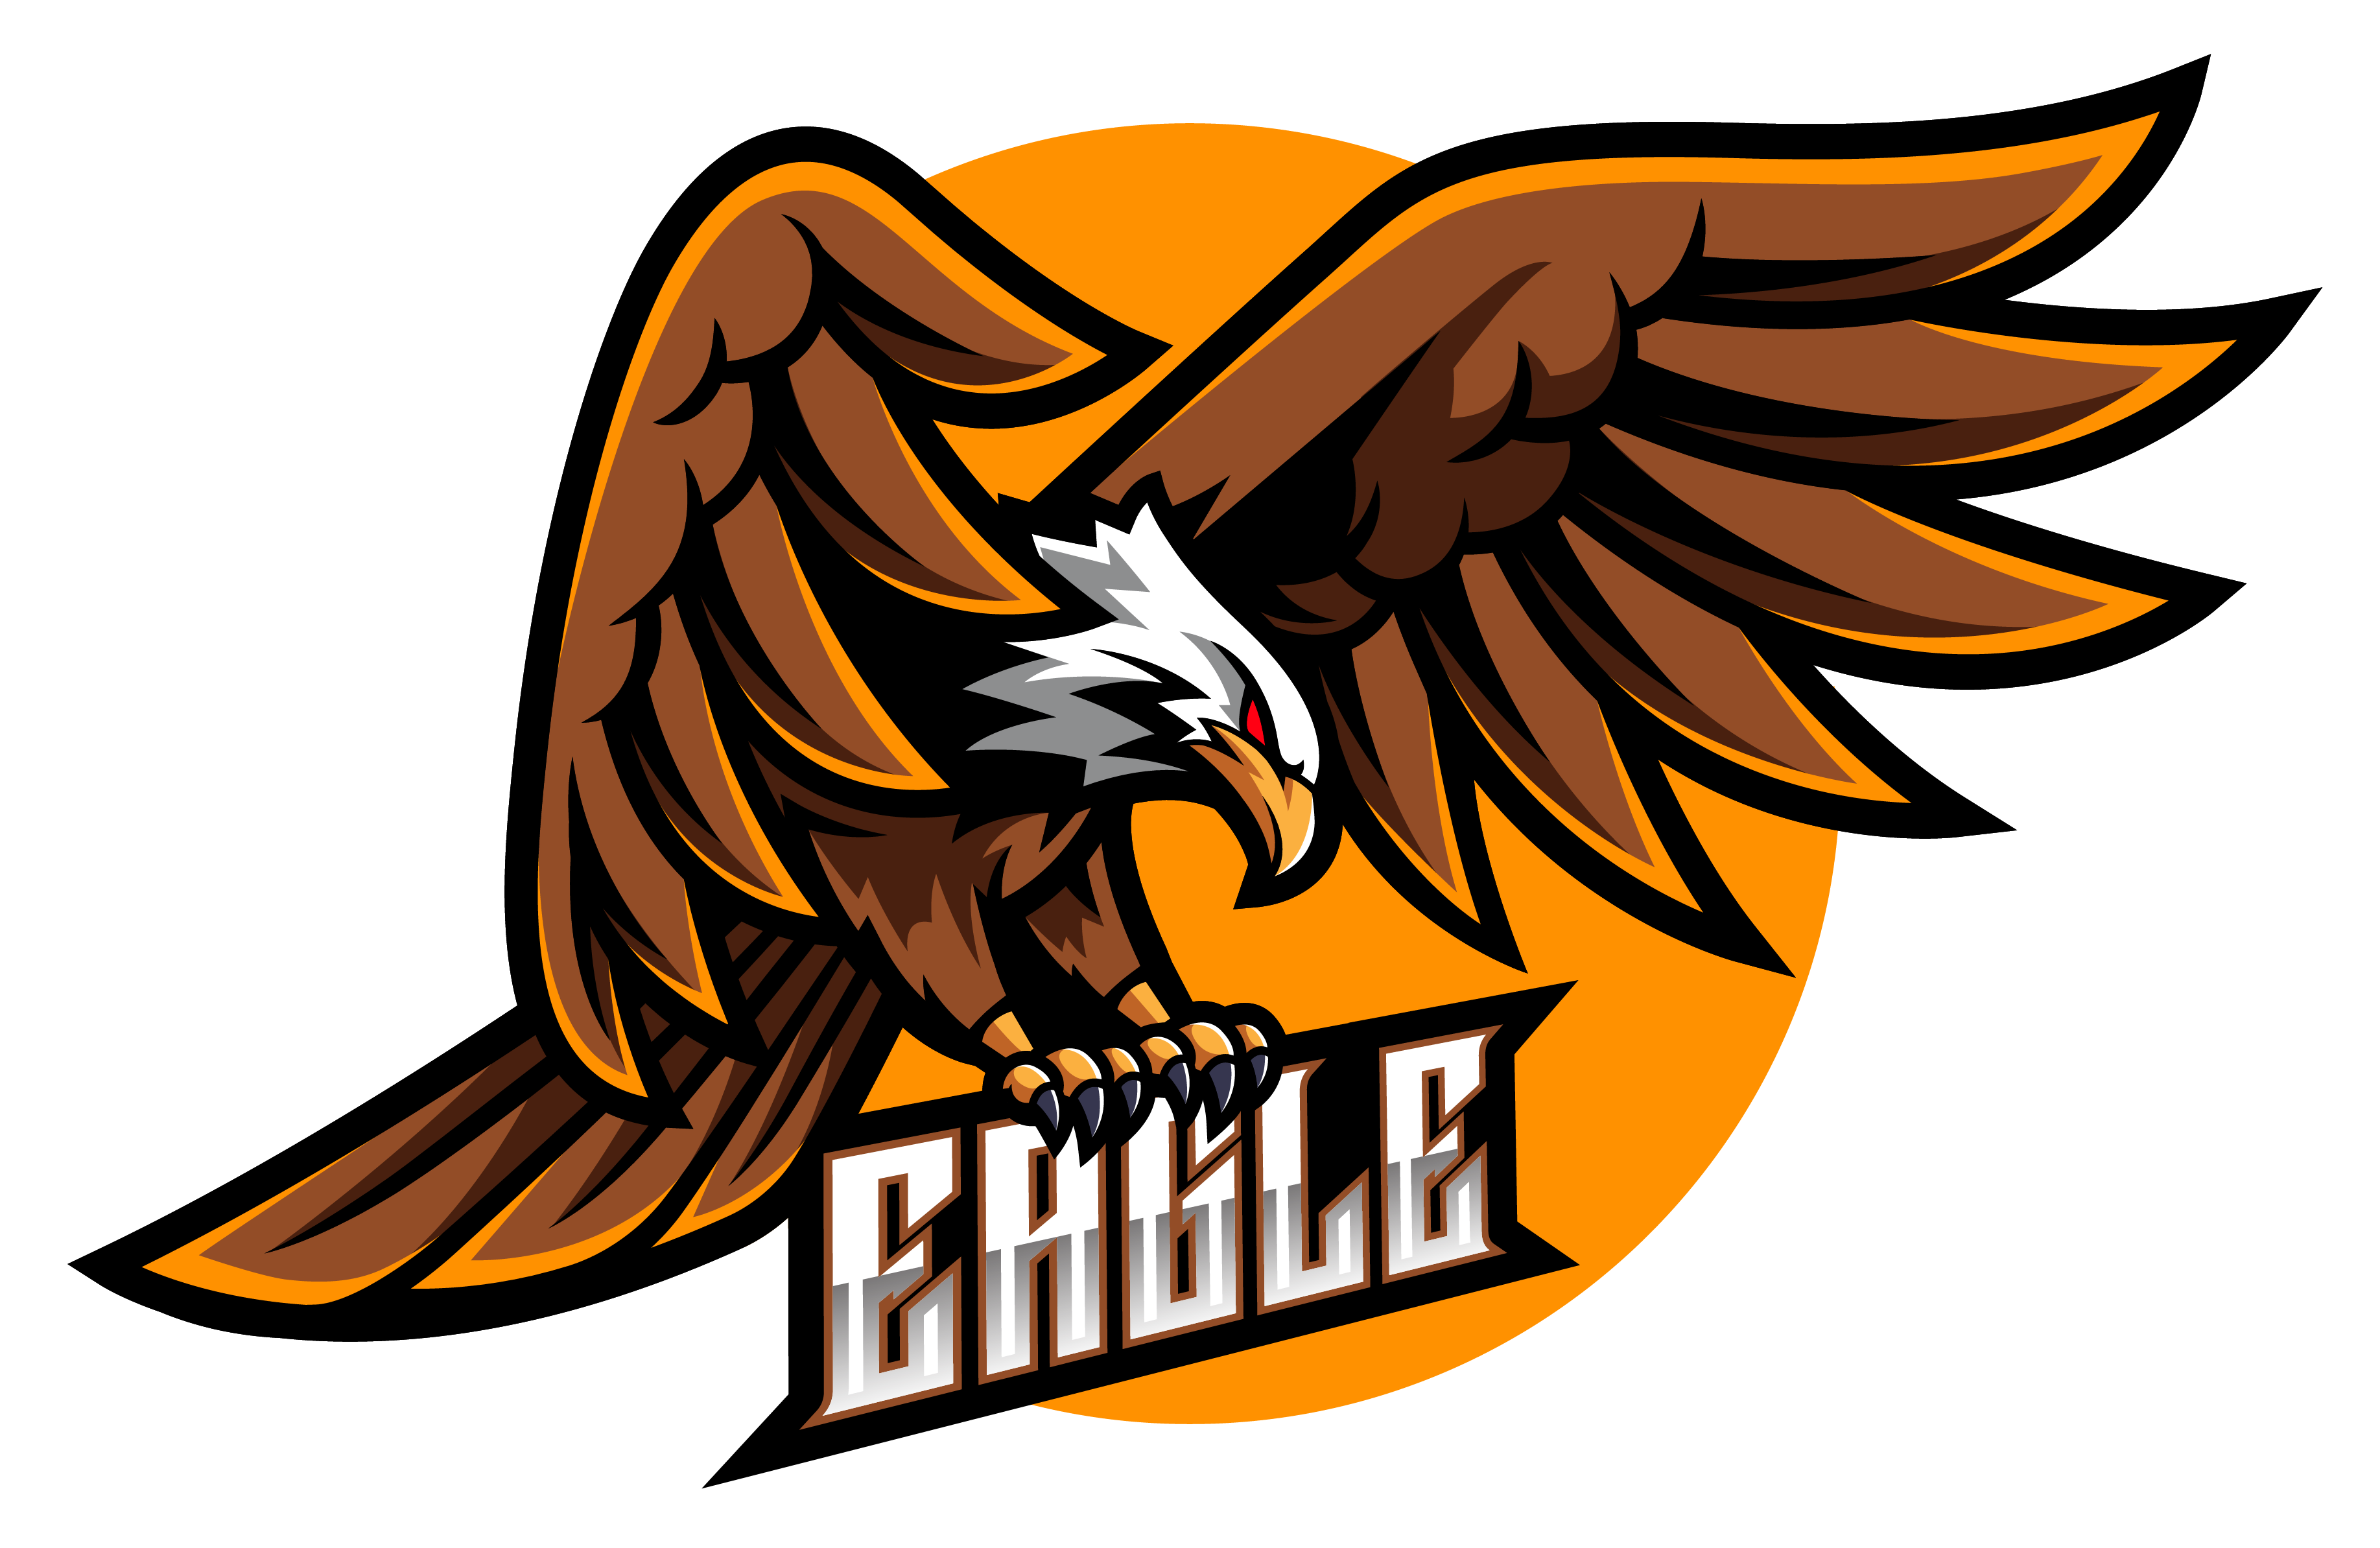 Imagens de aguia logo png